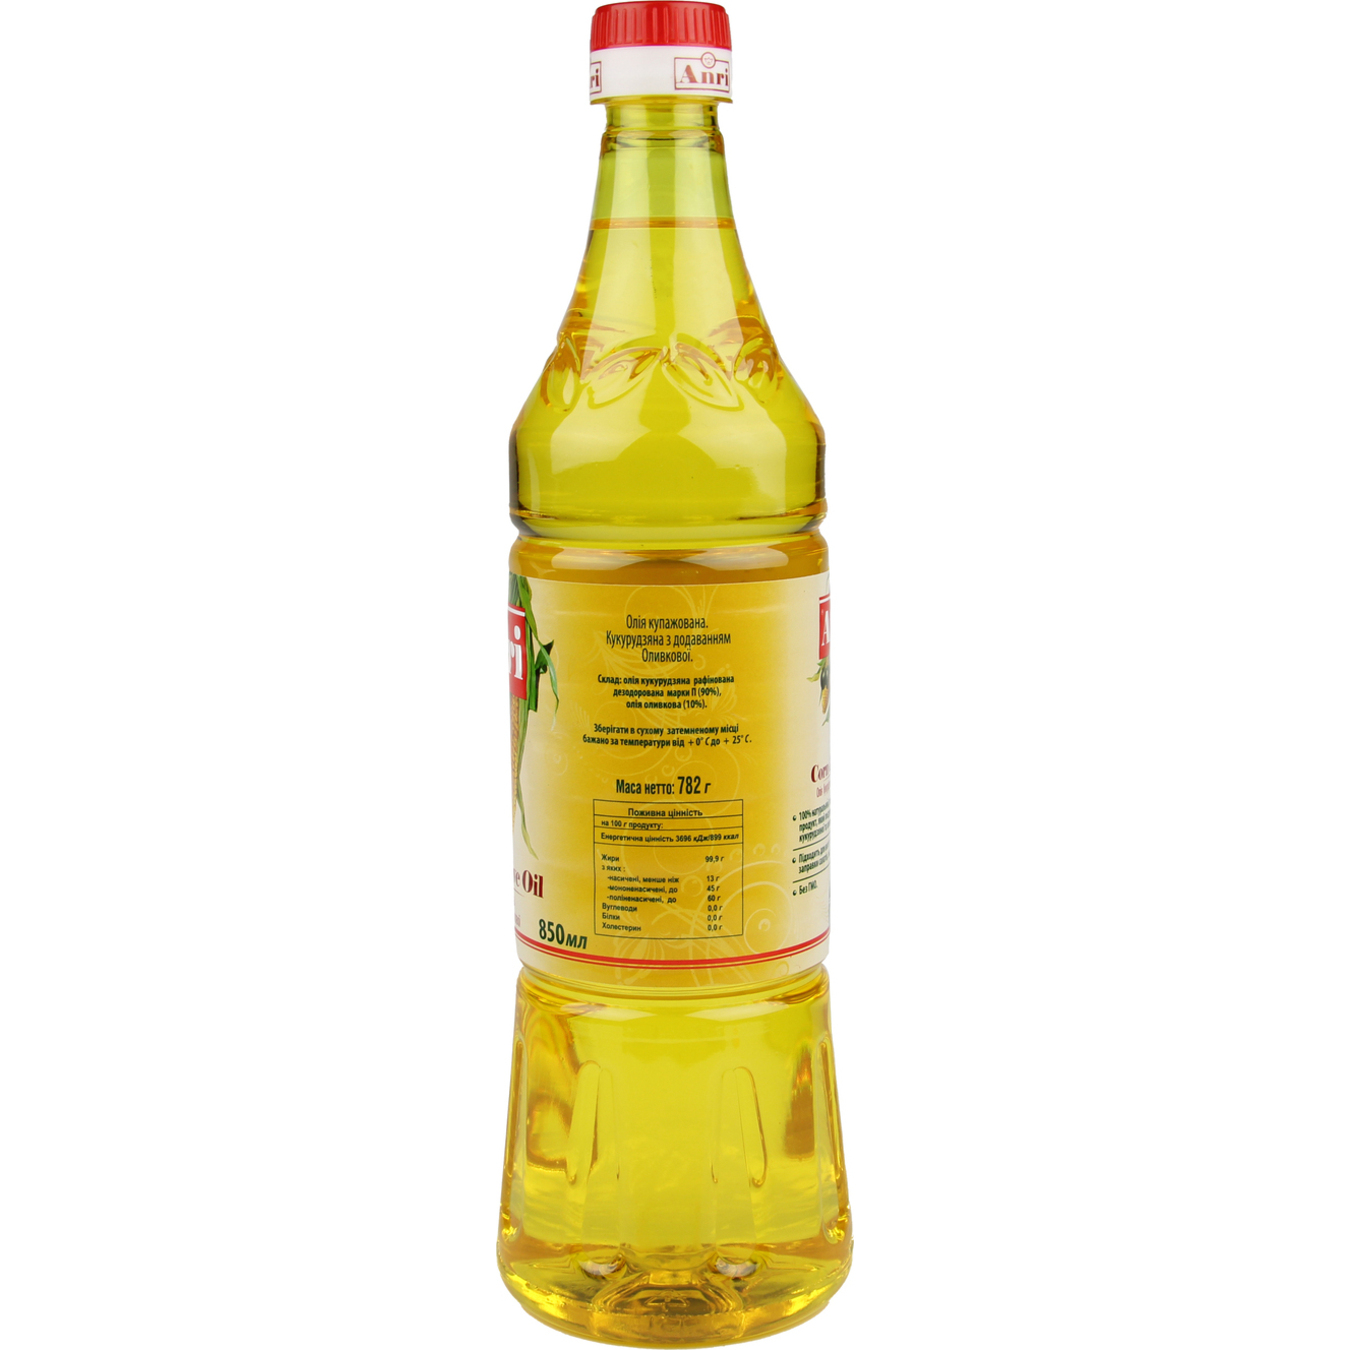 ANRI Blended Corn & Olive Oil 850ml 2